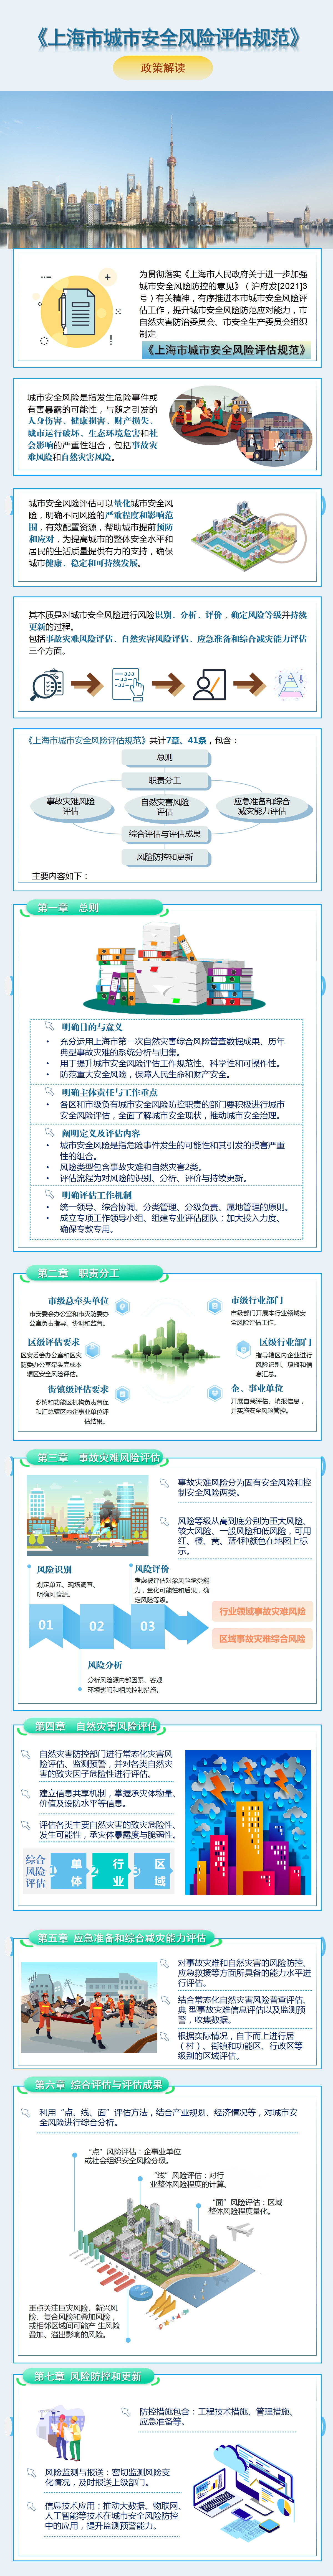 《上海市城市安全风险评估规范》政策解读.jpg